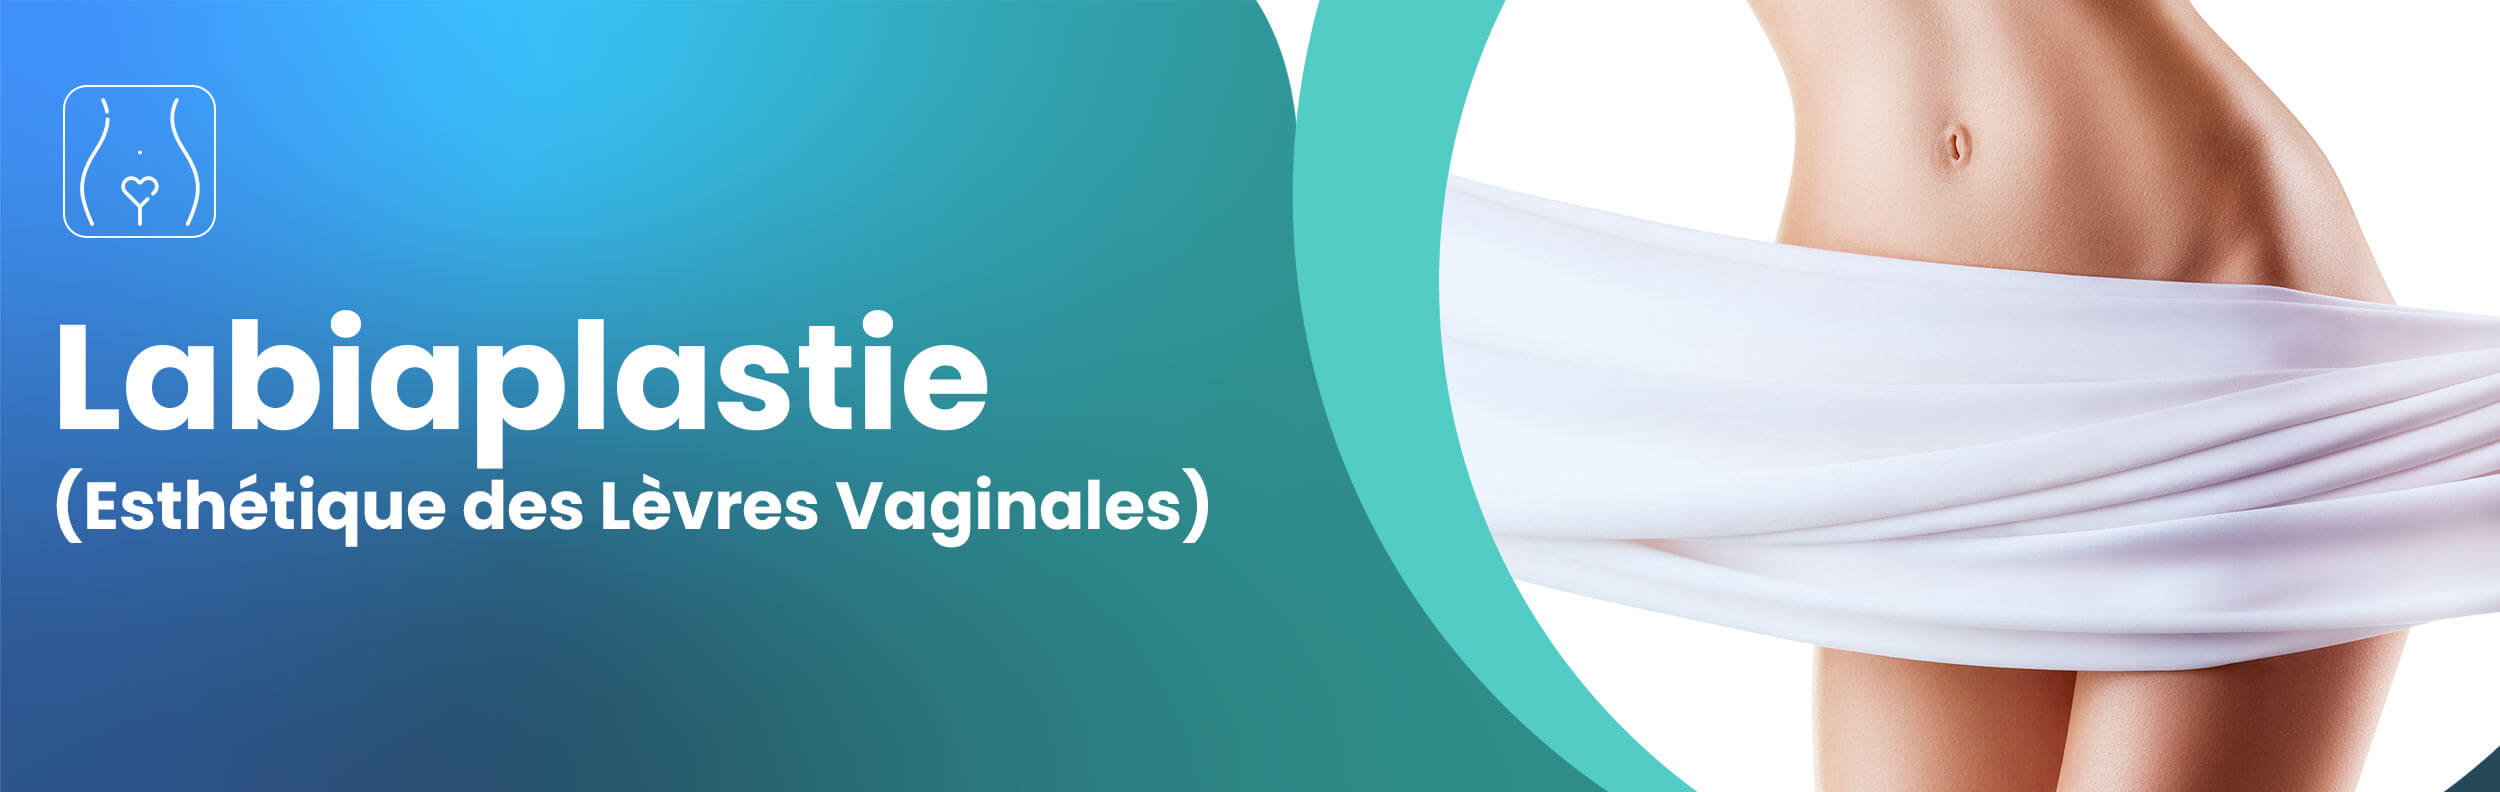 labiaplastie-esthetique-des-levres-vaginales